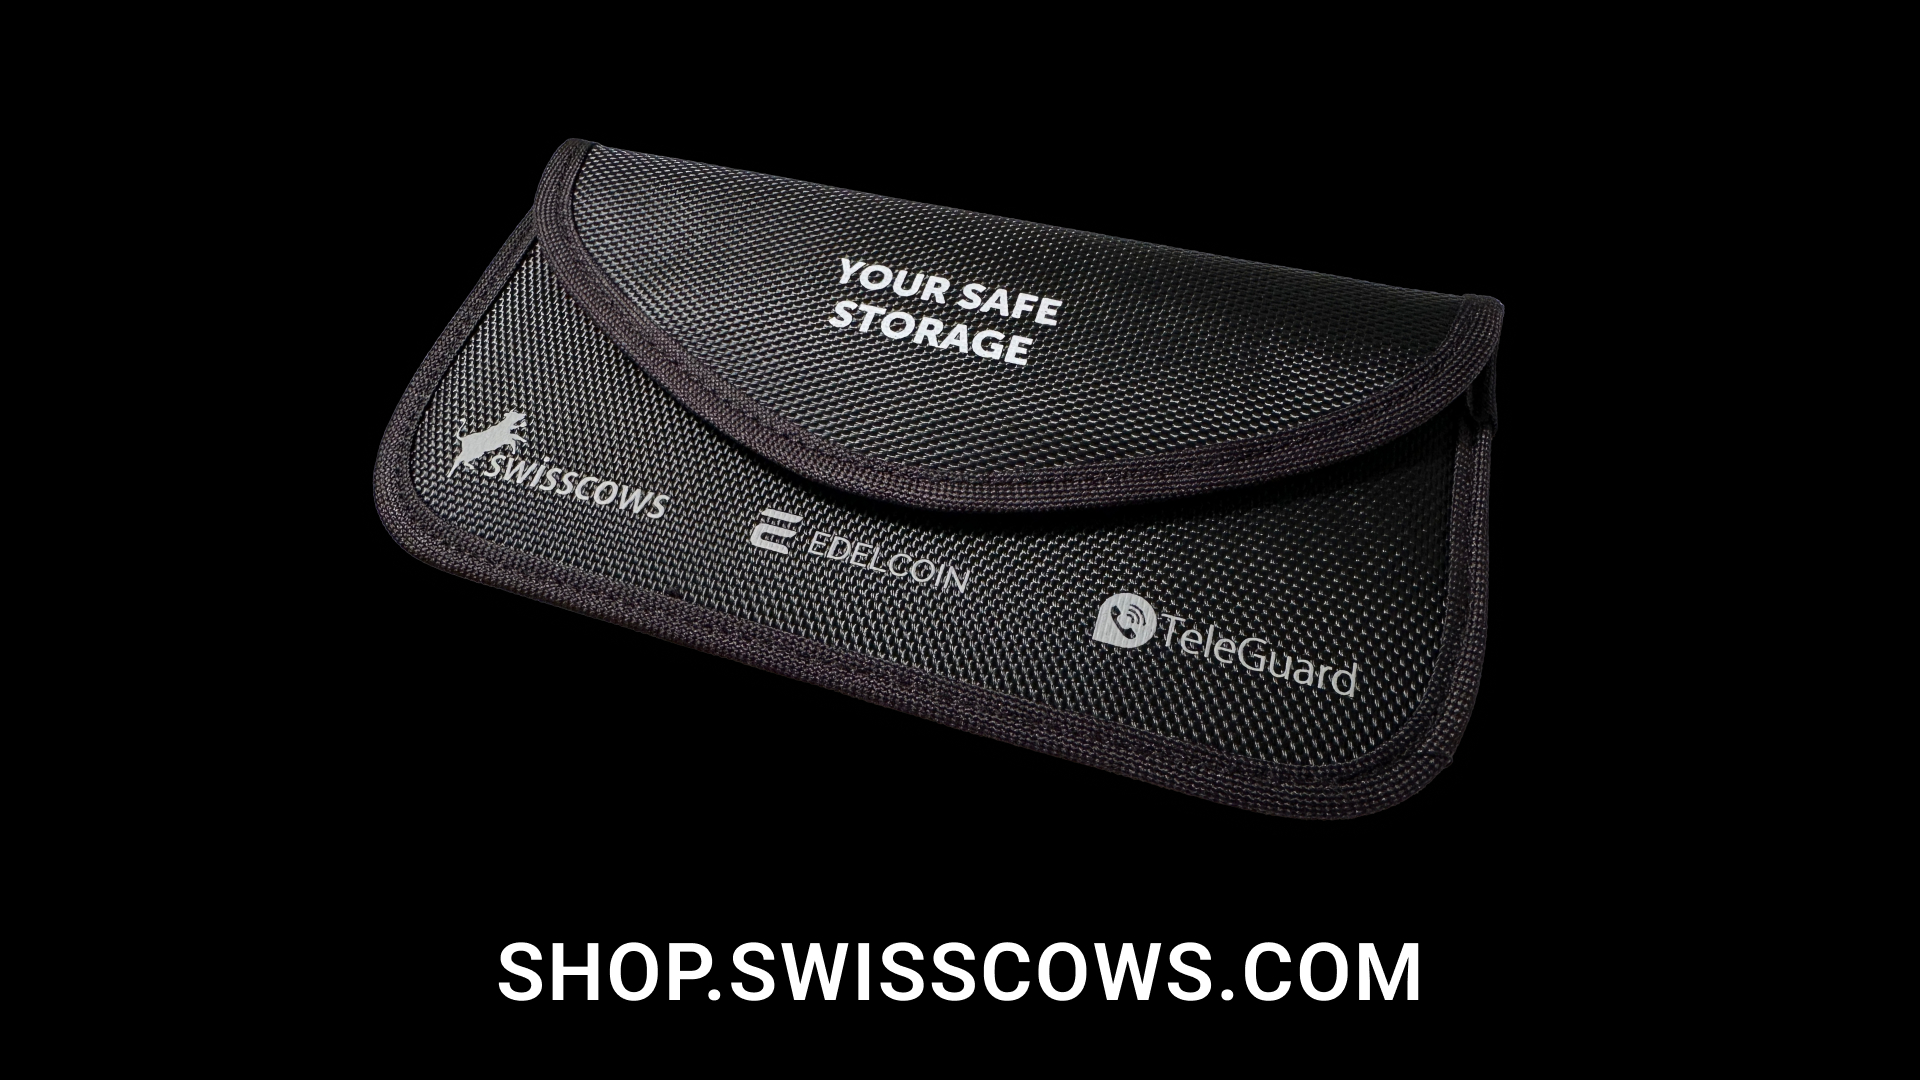 Sichern Sie Ihr Handy und Autoschlüssel mit Swisscows Faraday Bag.